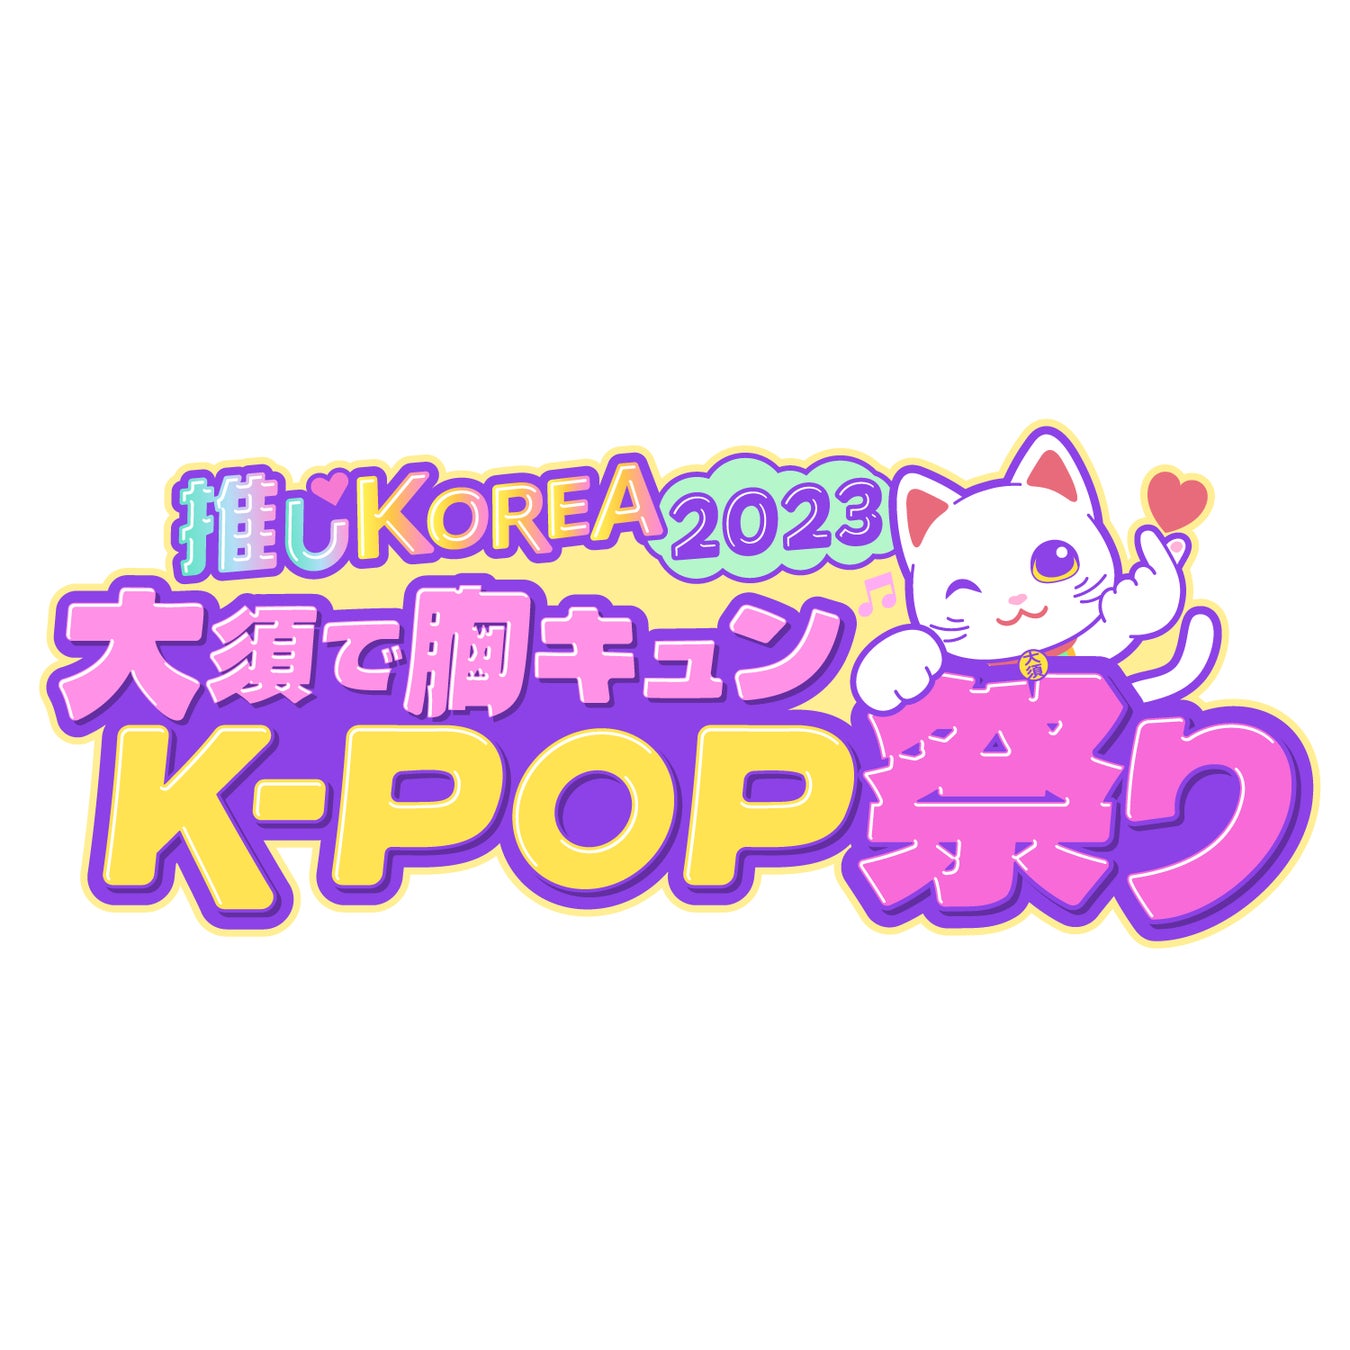 憧れのK-POPアーティストに会える『推しKOREA2023 大須で胸キュンK-POP祭り』 TIGETにてチケット独占販売中のサブ画像1